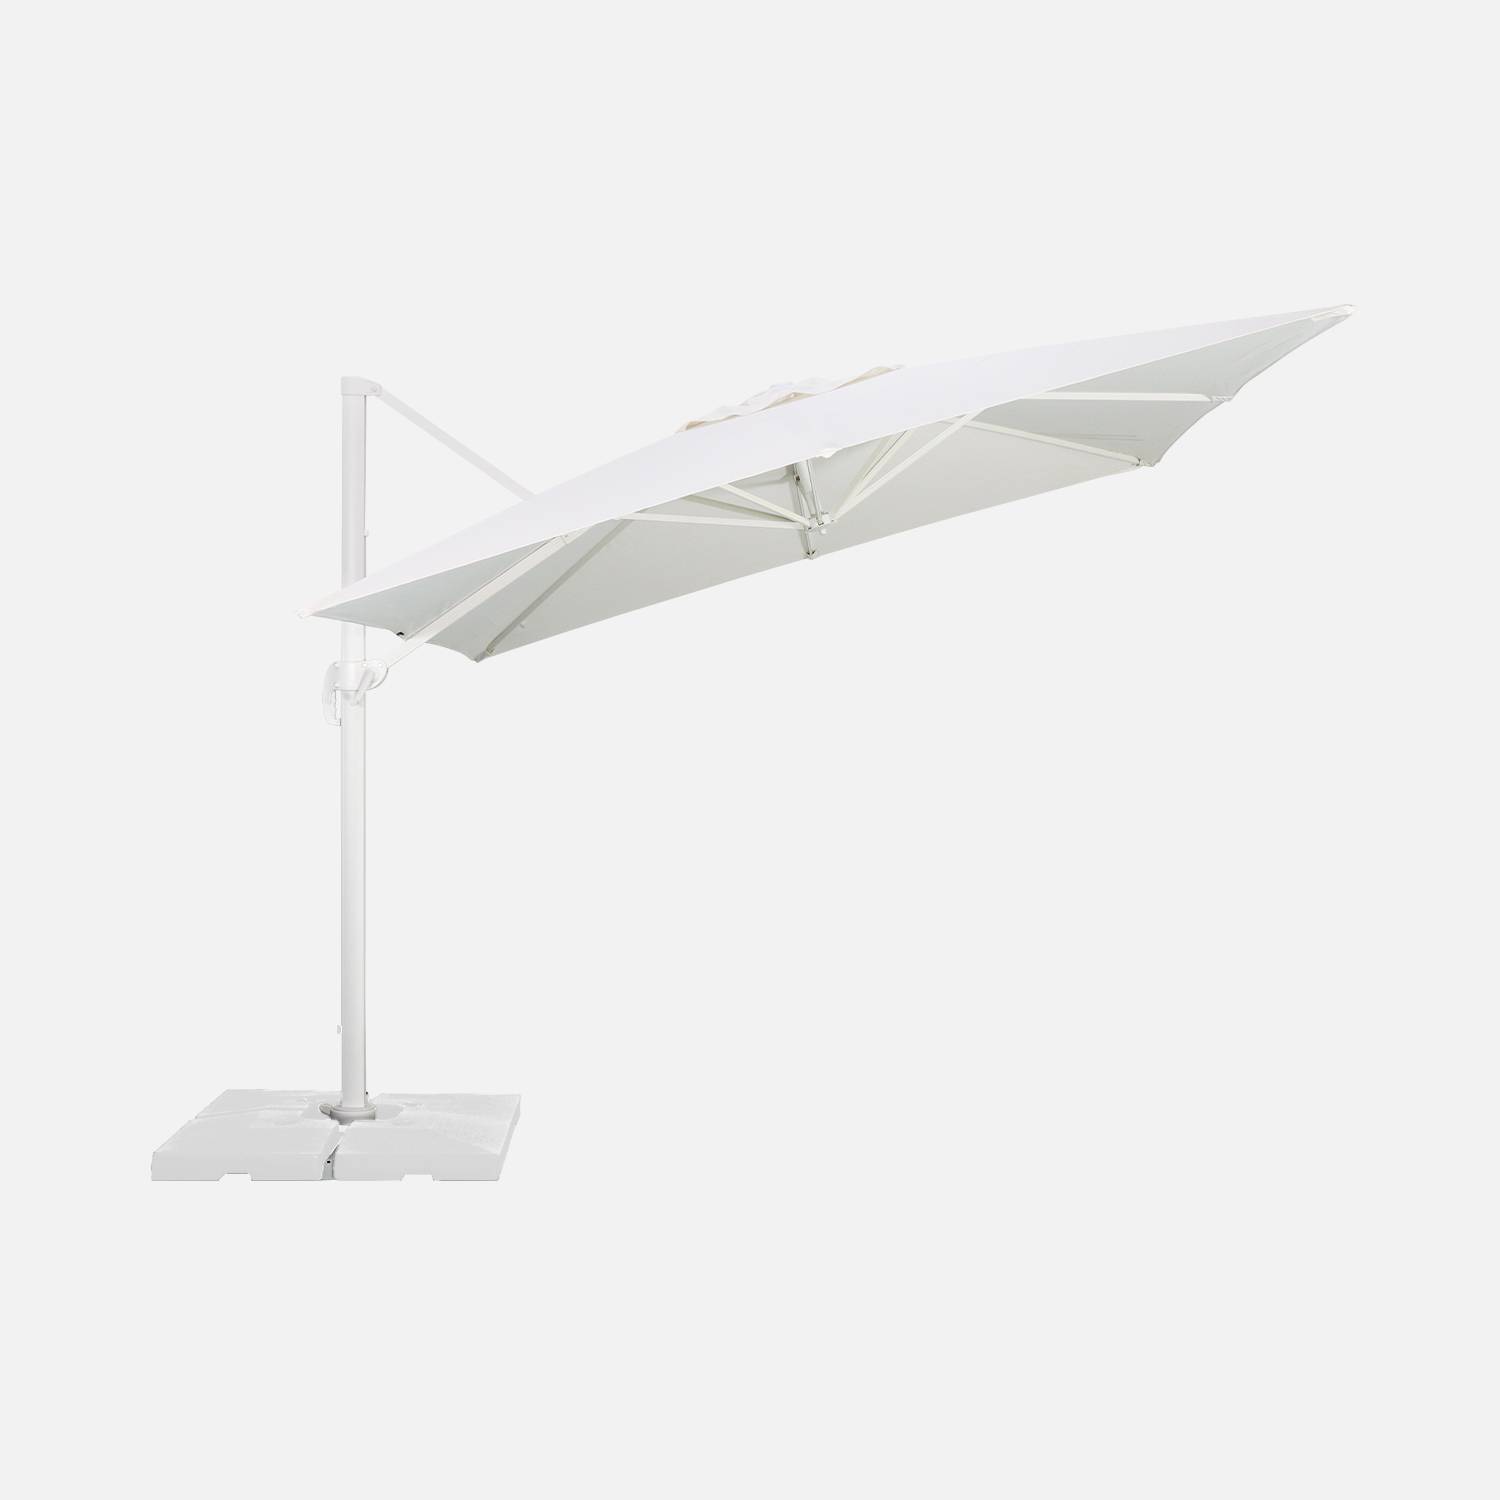 Hoogwaardige 3 x 3m vierkante parasol- Falgos - Wit - Kantelbare, opvouwbare en 360° draaibare zweefparasol Photo7